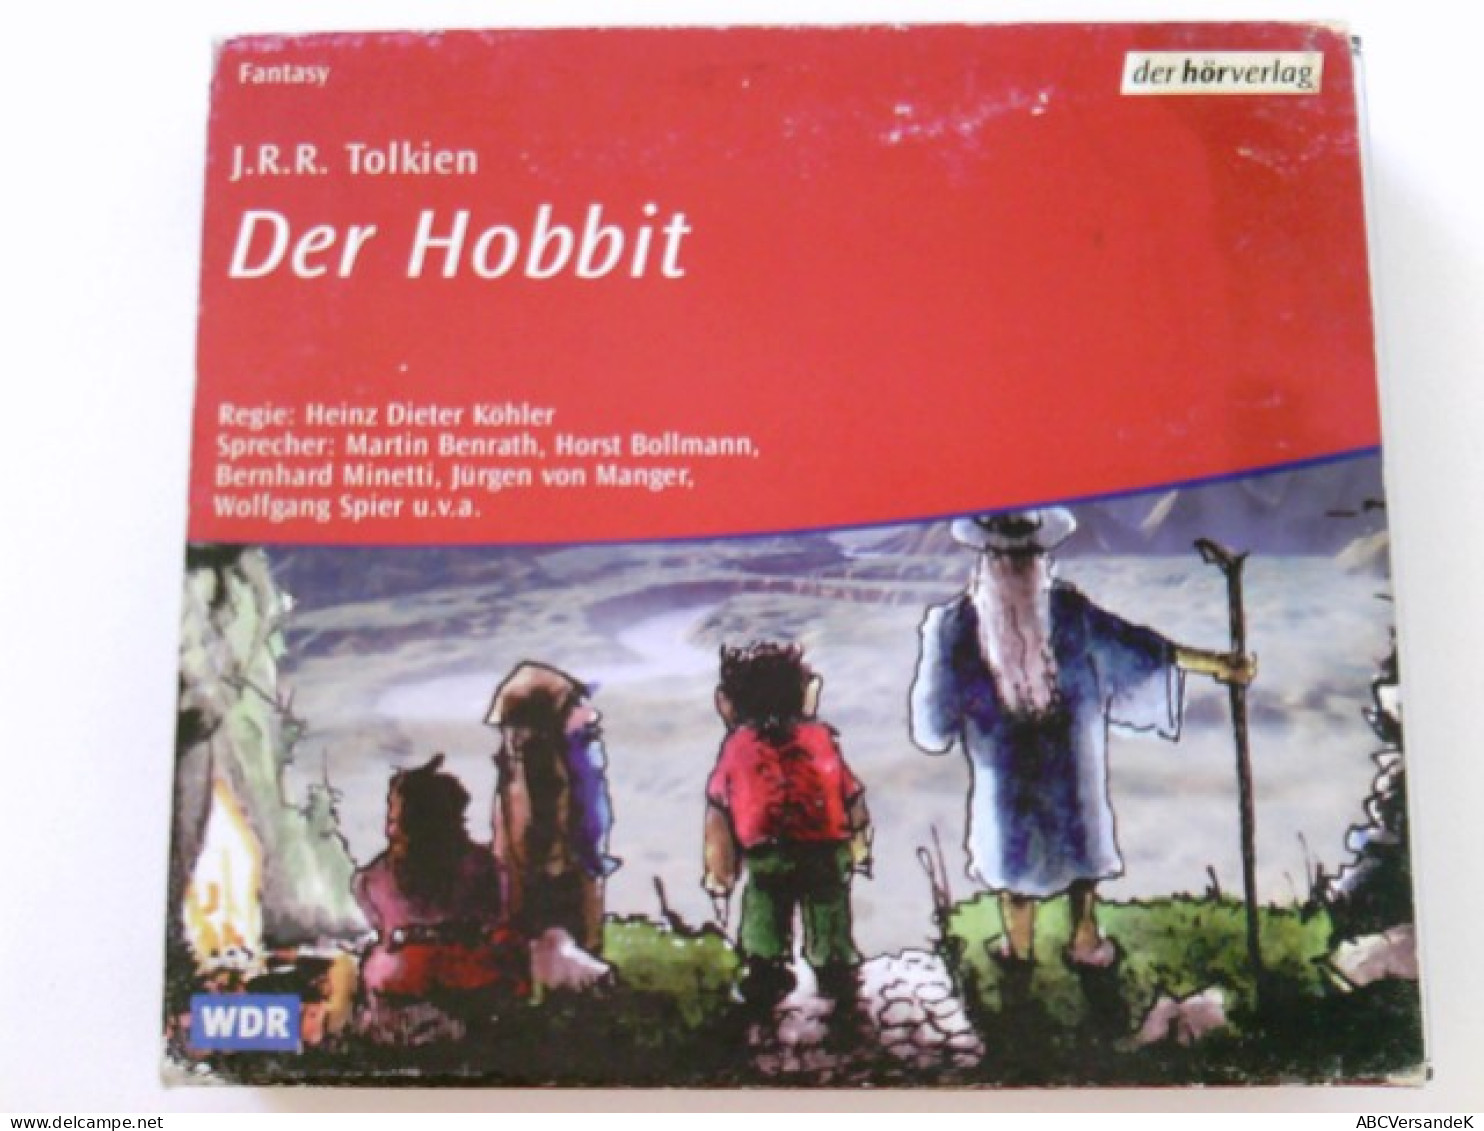 Der Hobbit. Audiobook. 4 CDs. - CD